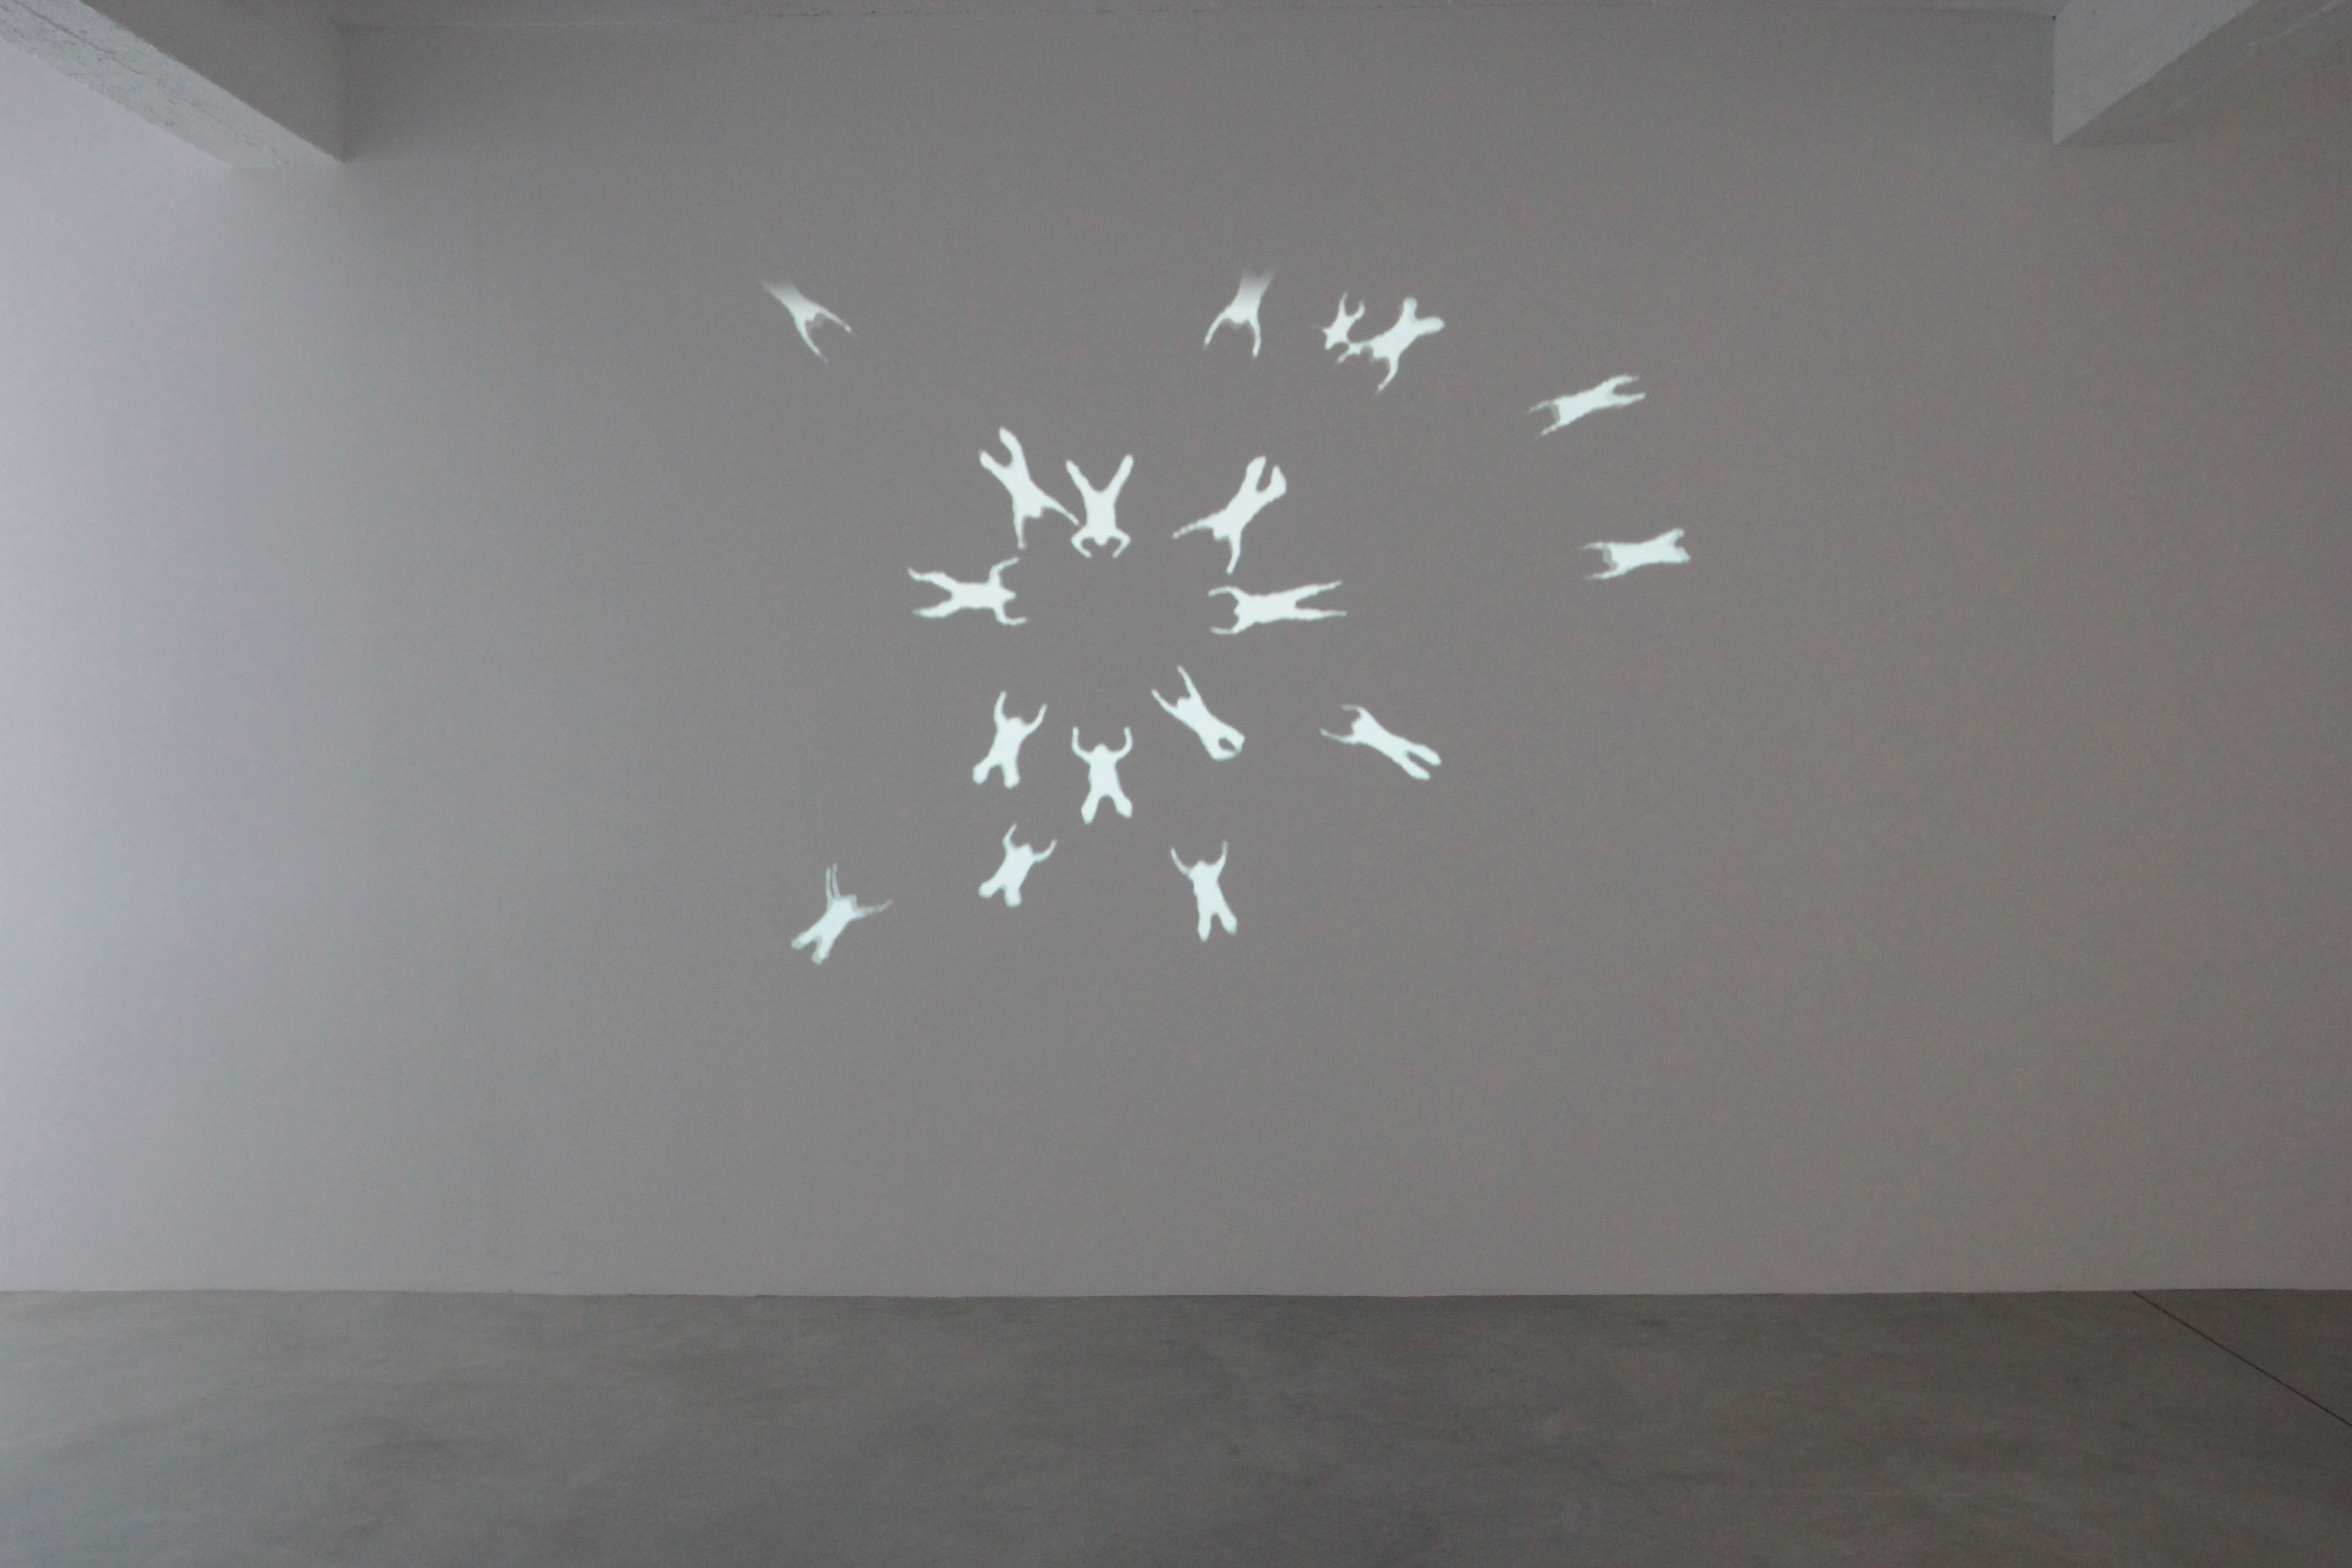 Fotografia projekcji pracy autorstwa Dominika Lejmana "Katedra 60s". Kadr na białą ścianę, na której wyświetlana jest projekcja humanoidalnych postaci.